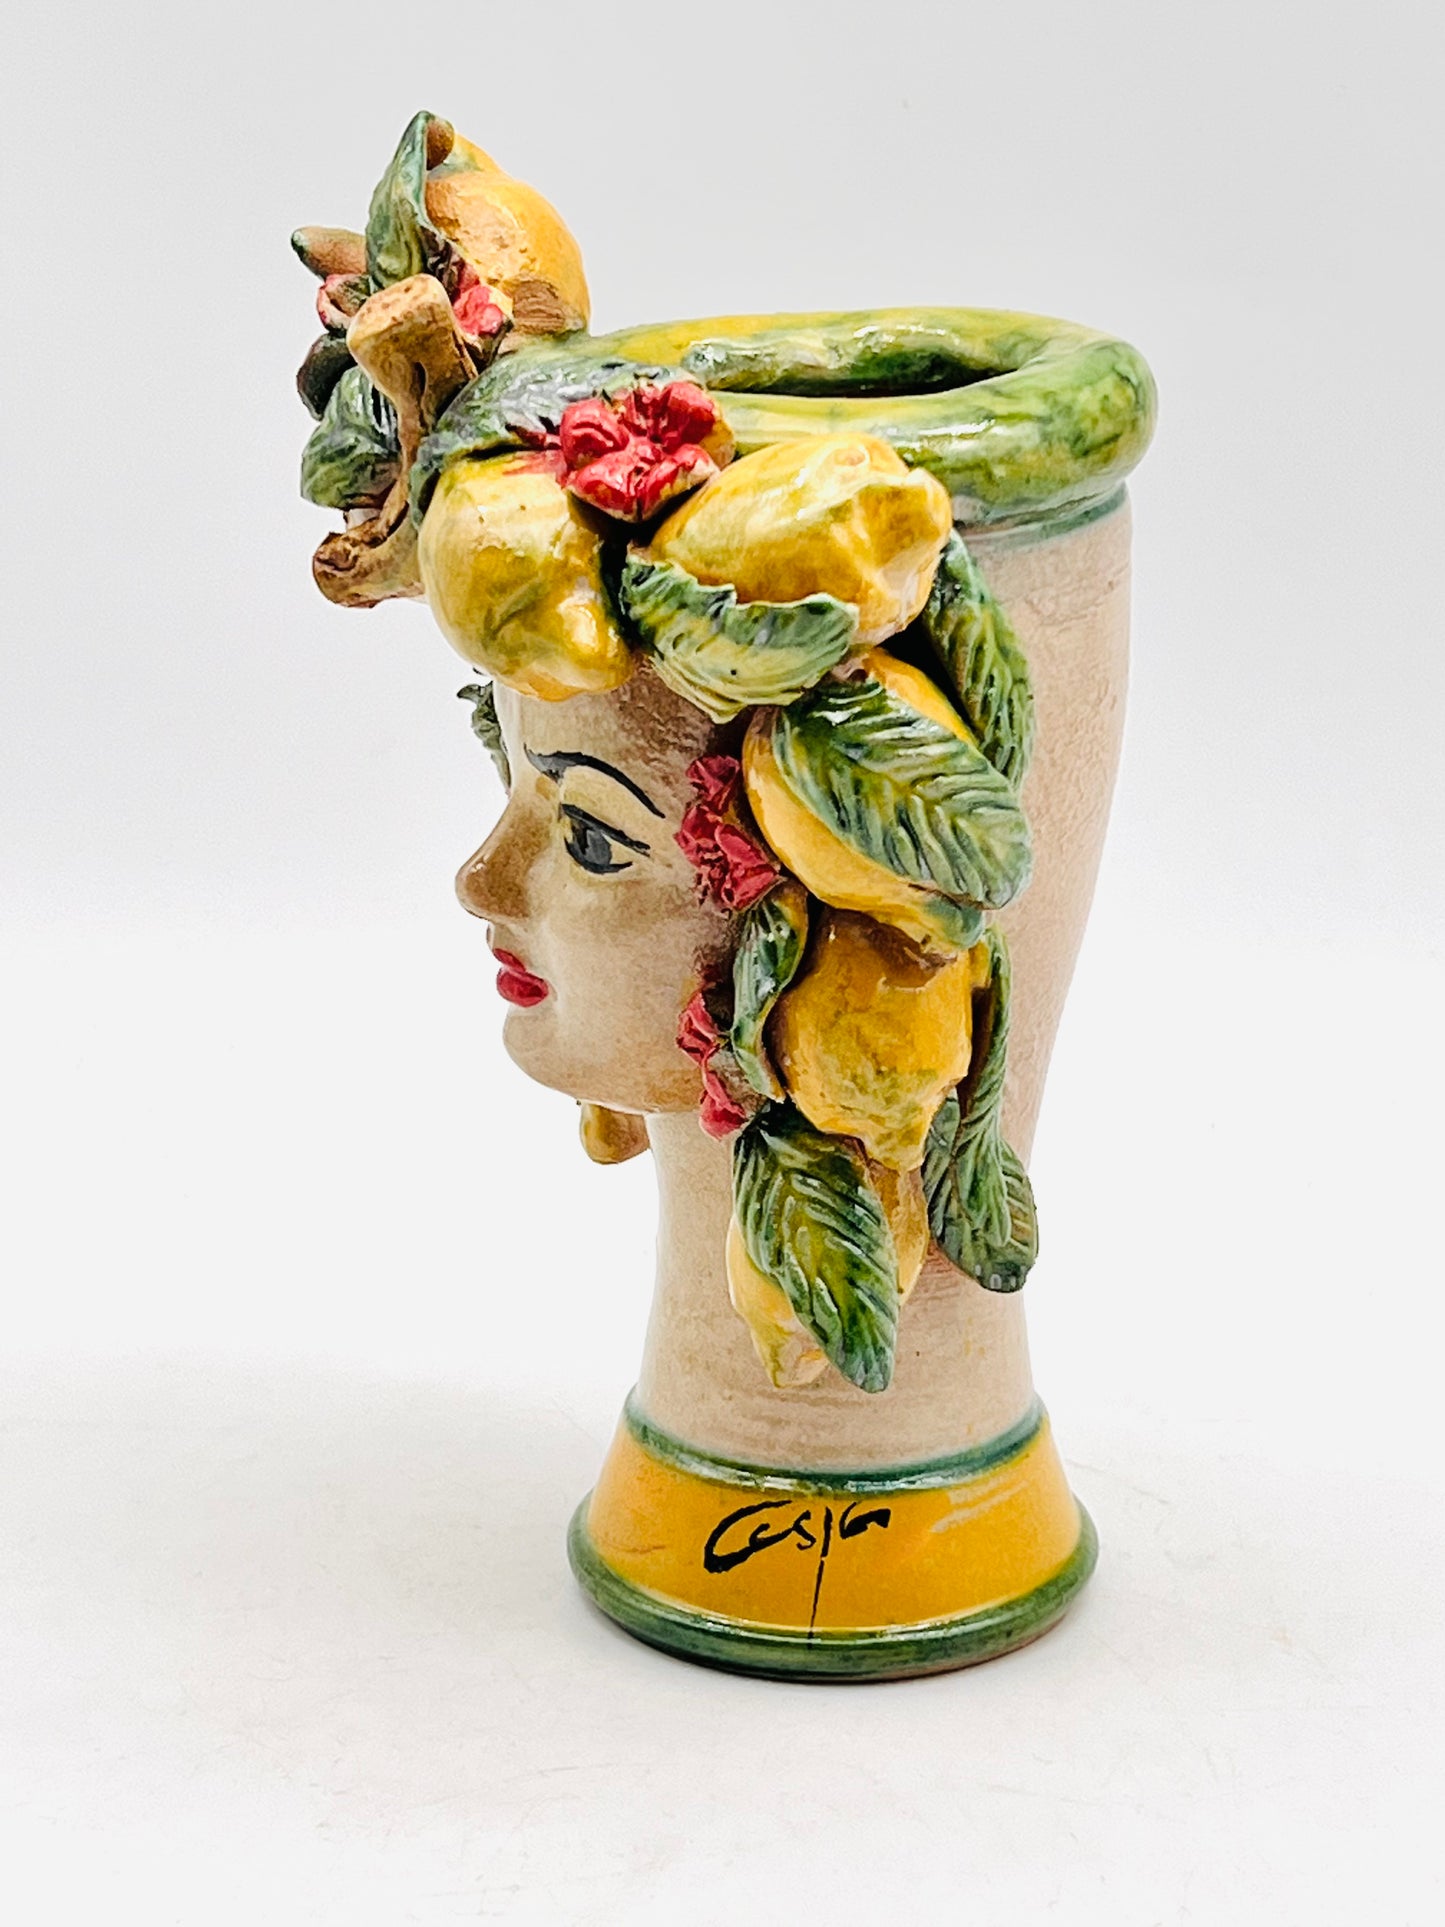 Cabeza recipiente de mujer decorada con limones 18cm